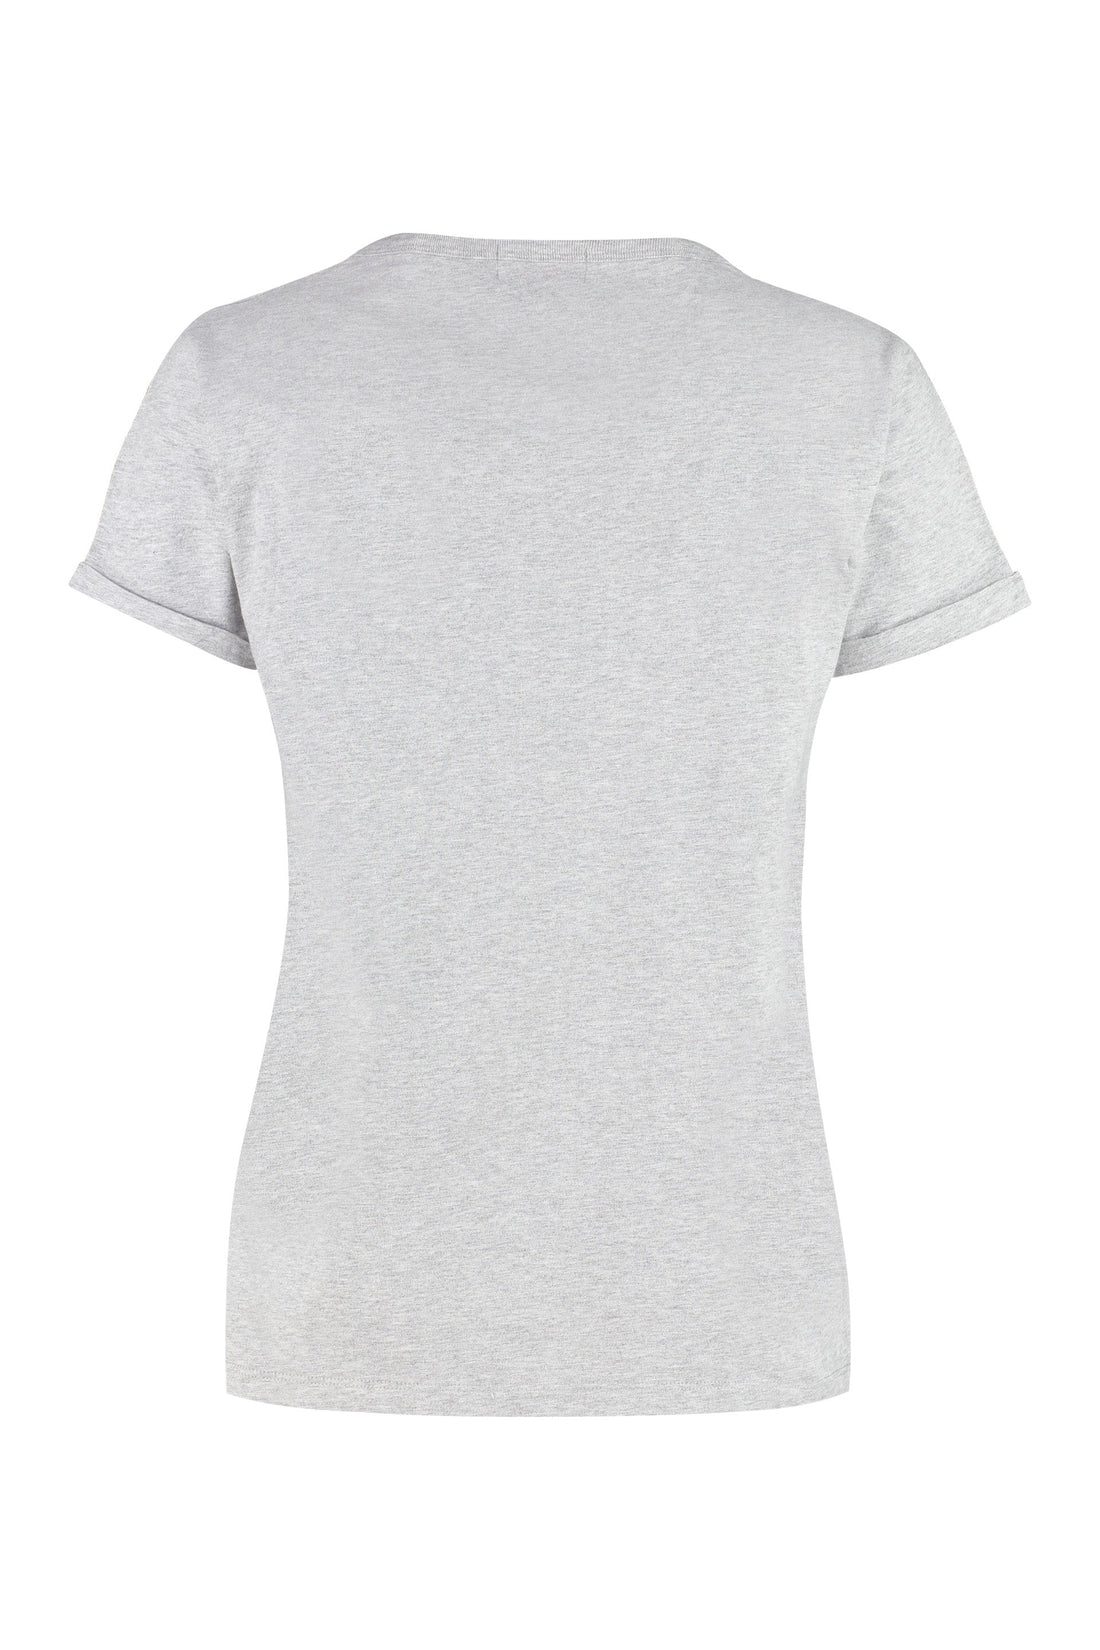 Maison Labiche-OUTLET-SALE-Cotton crew-neck T-shirt-ARCHIVIST